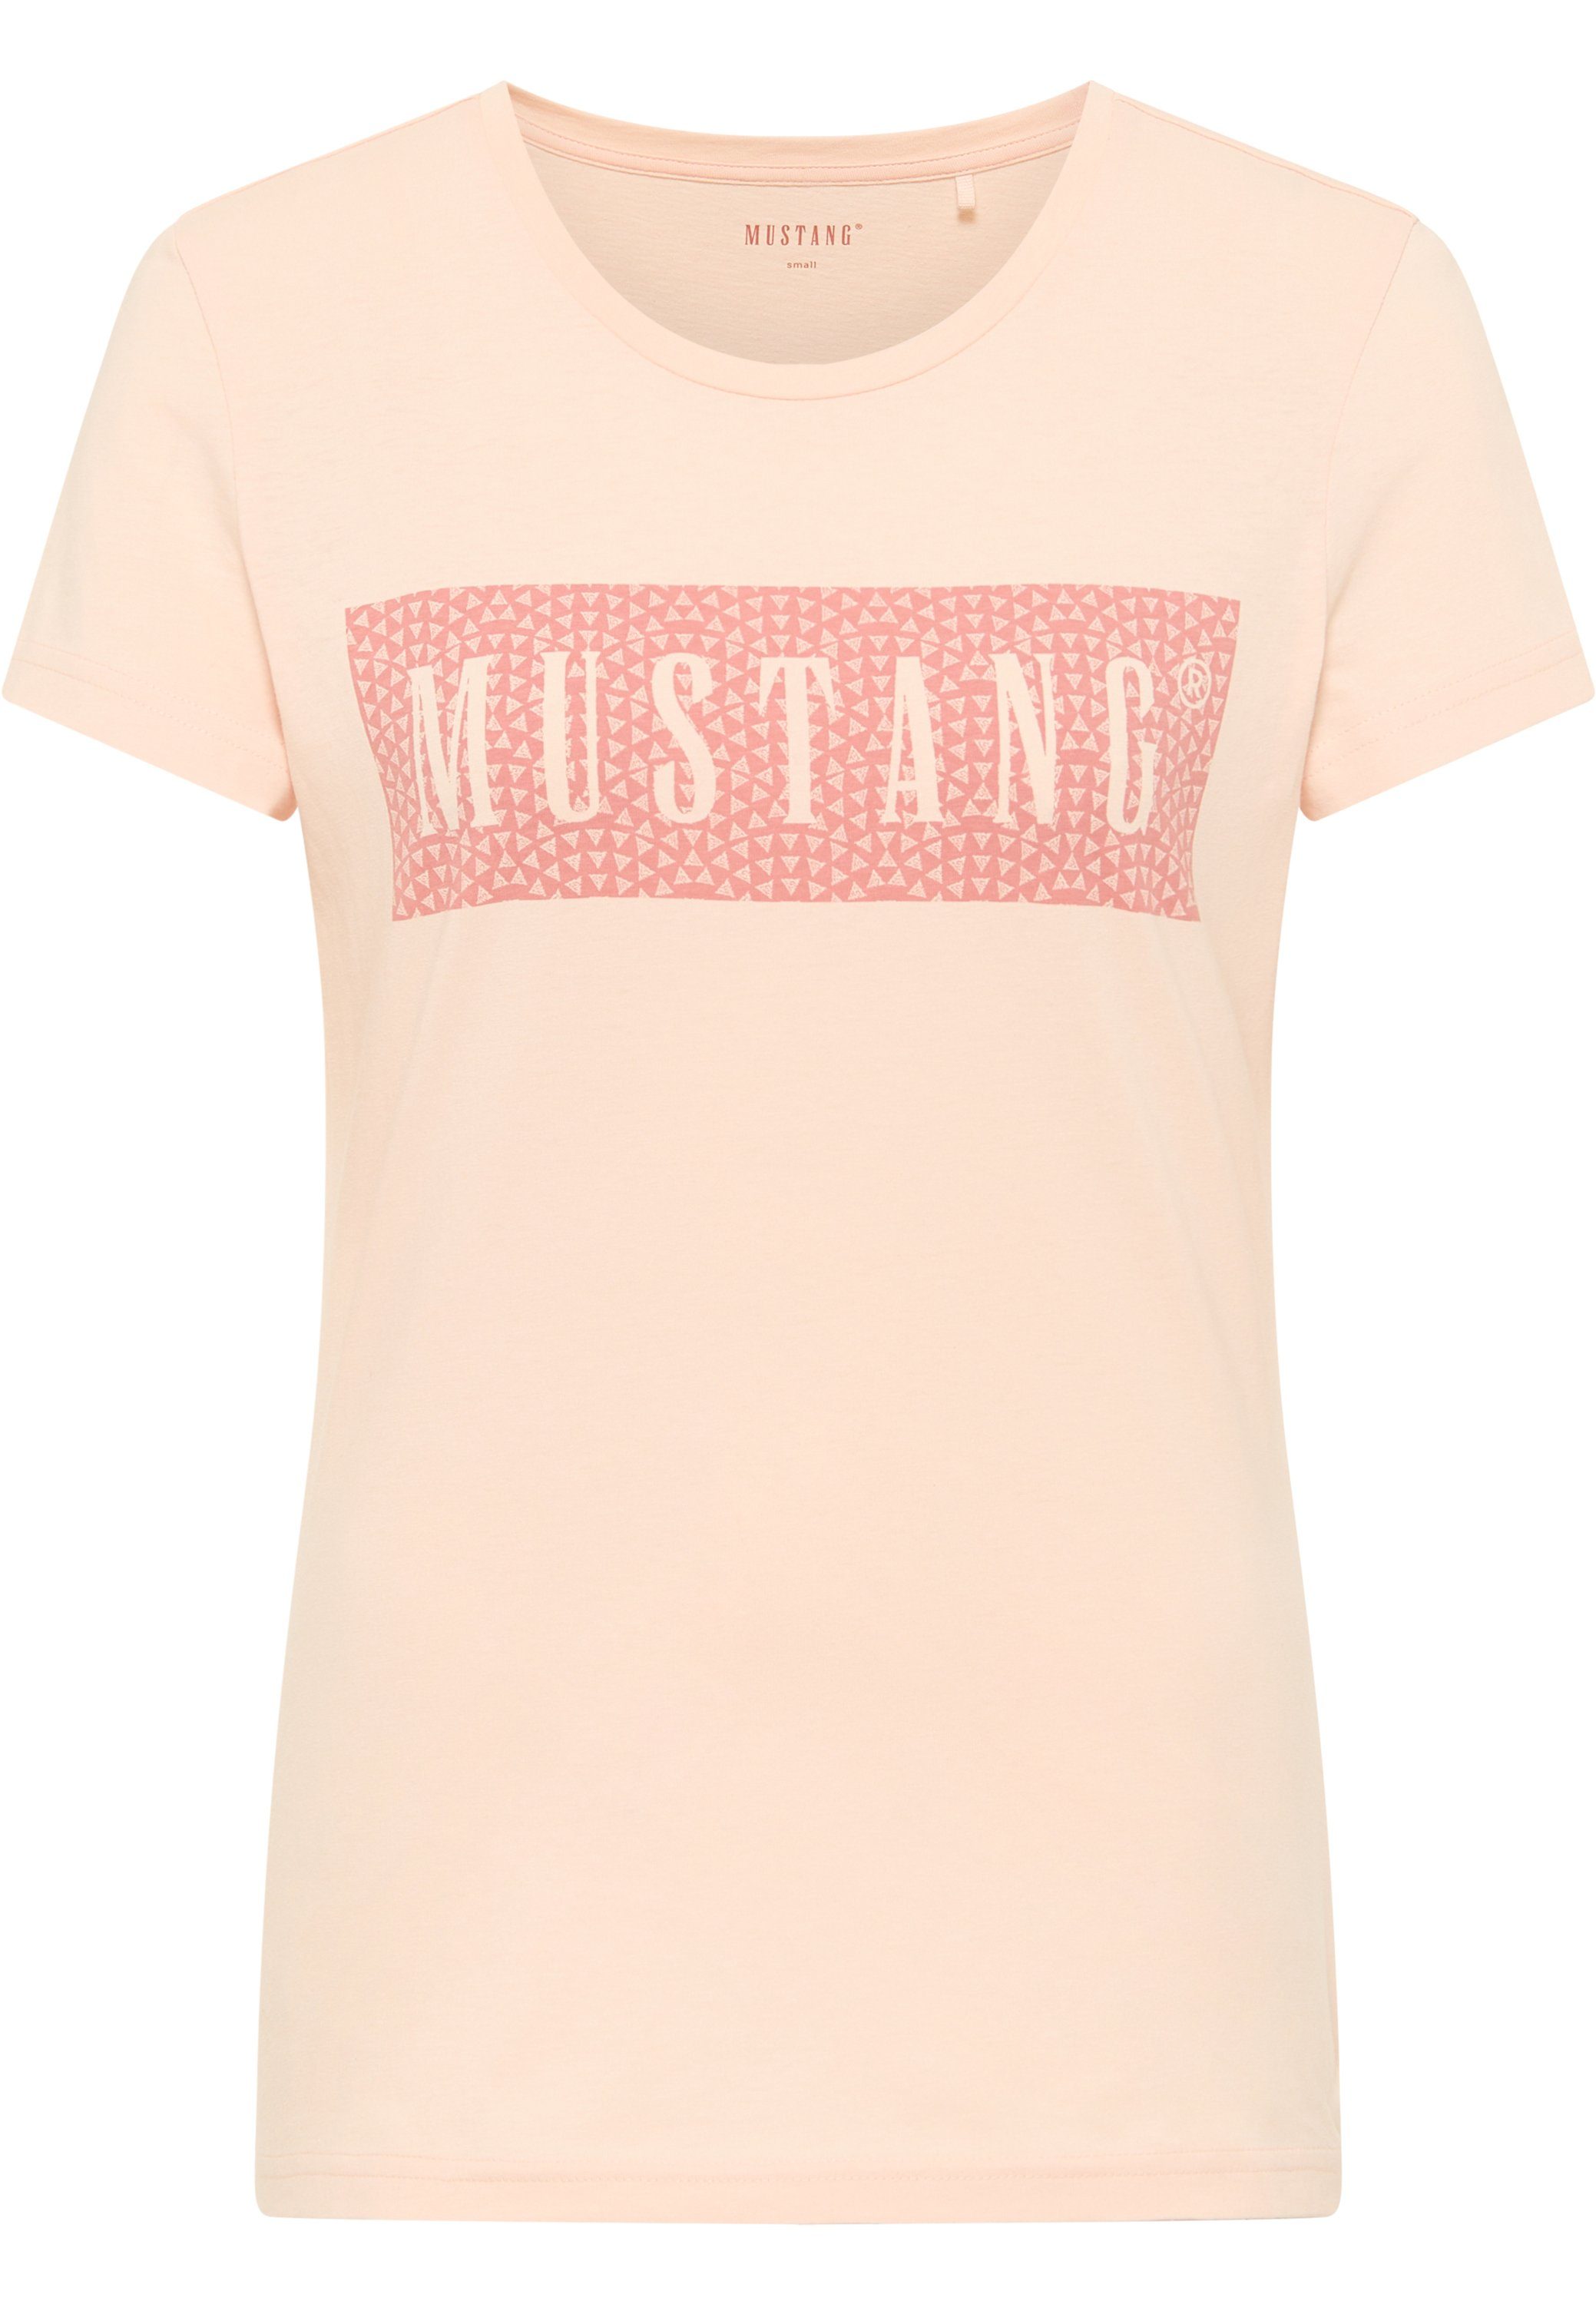 MUSTANG Kurzarmshirt Mustang Print-Shirt hellrosa T-Shirt